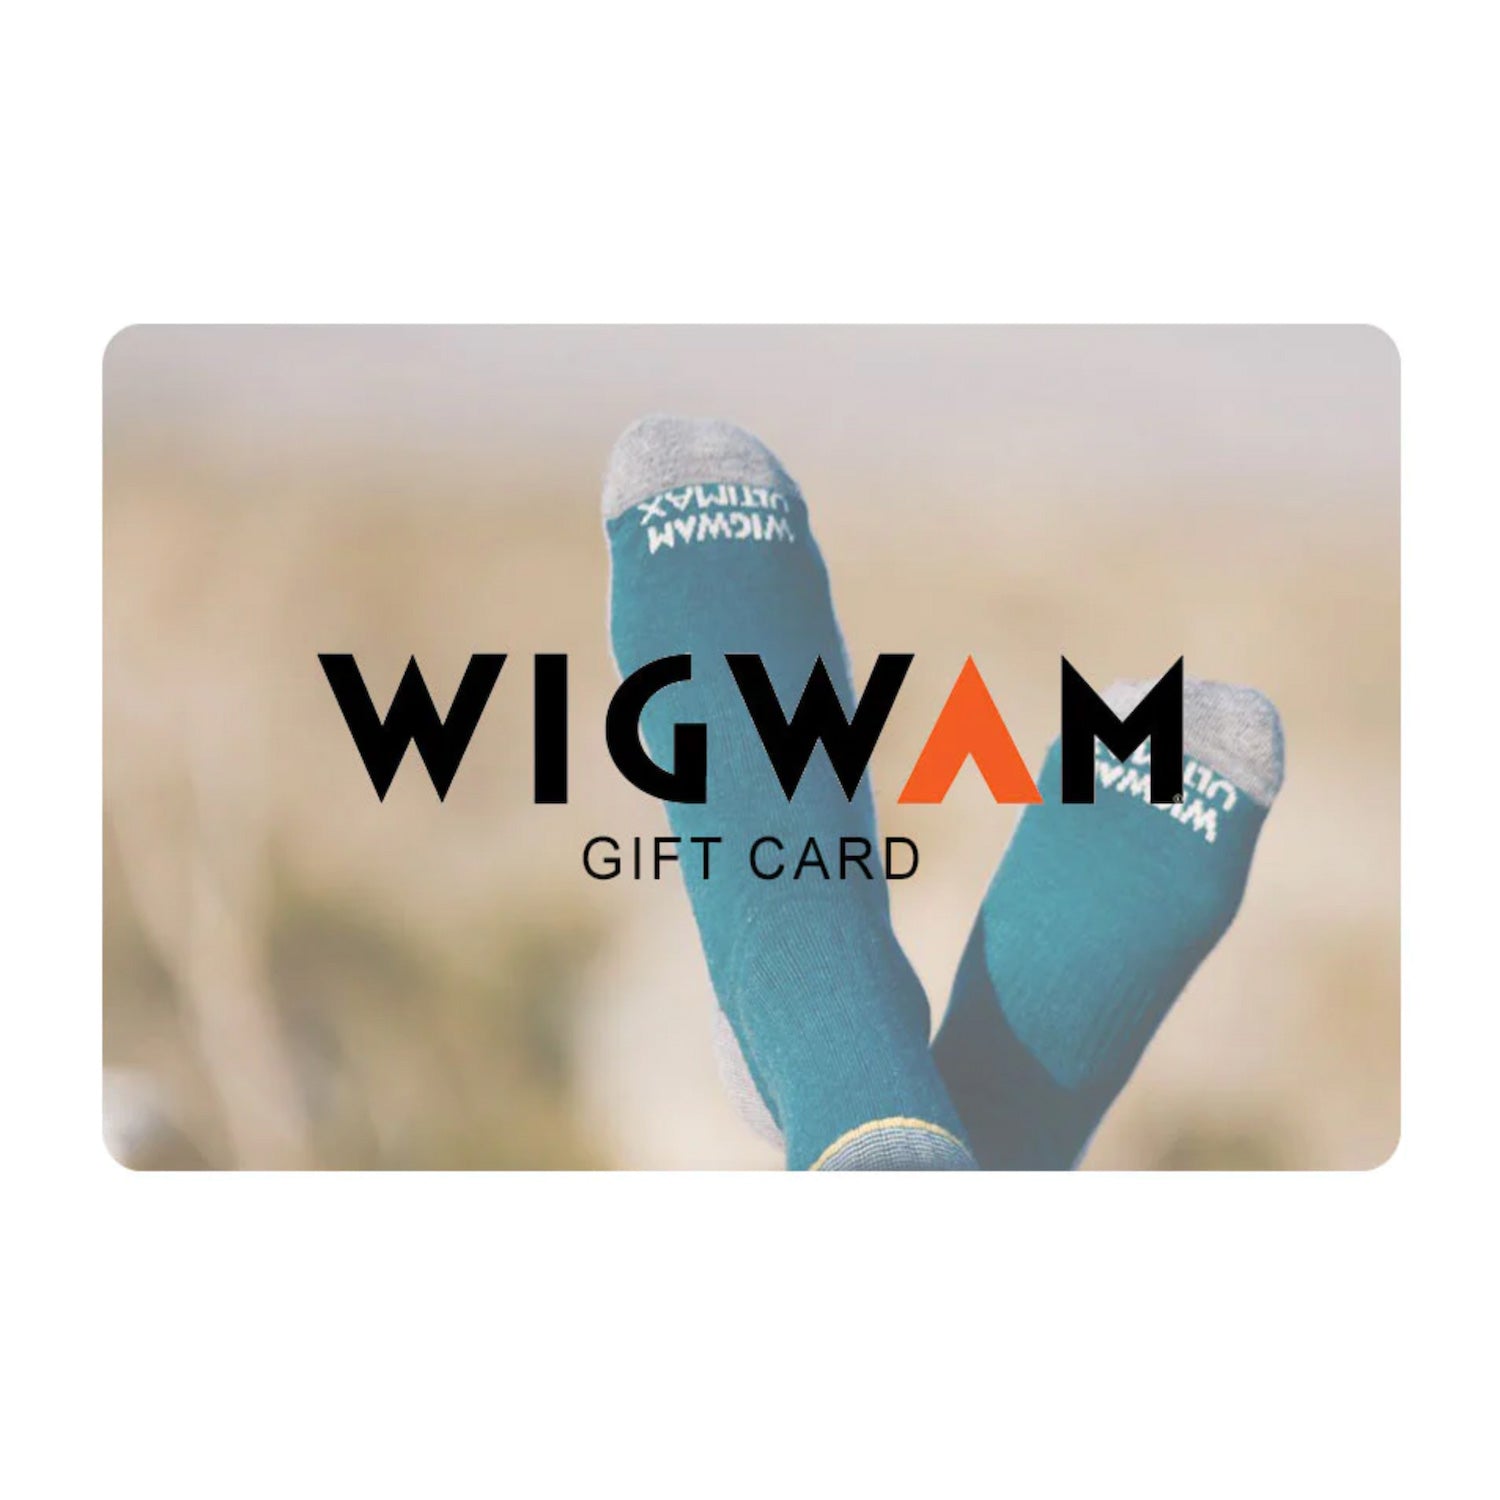 Wigwam Socks gift card